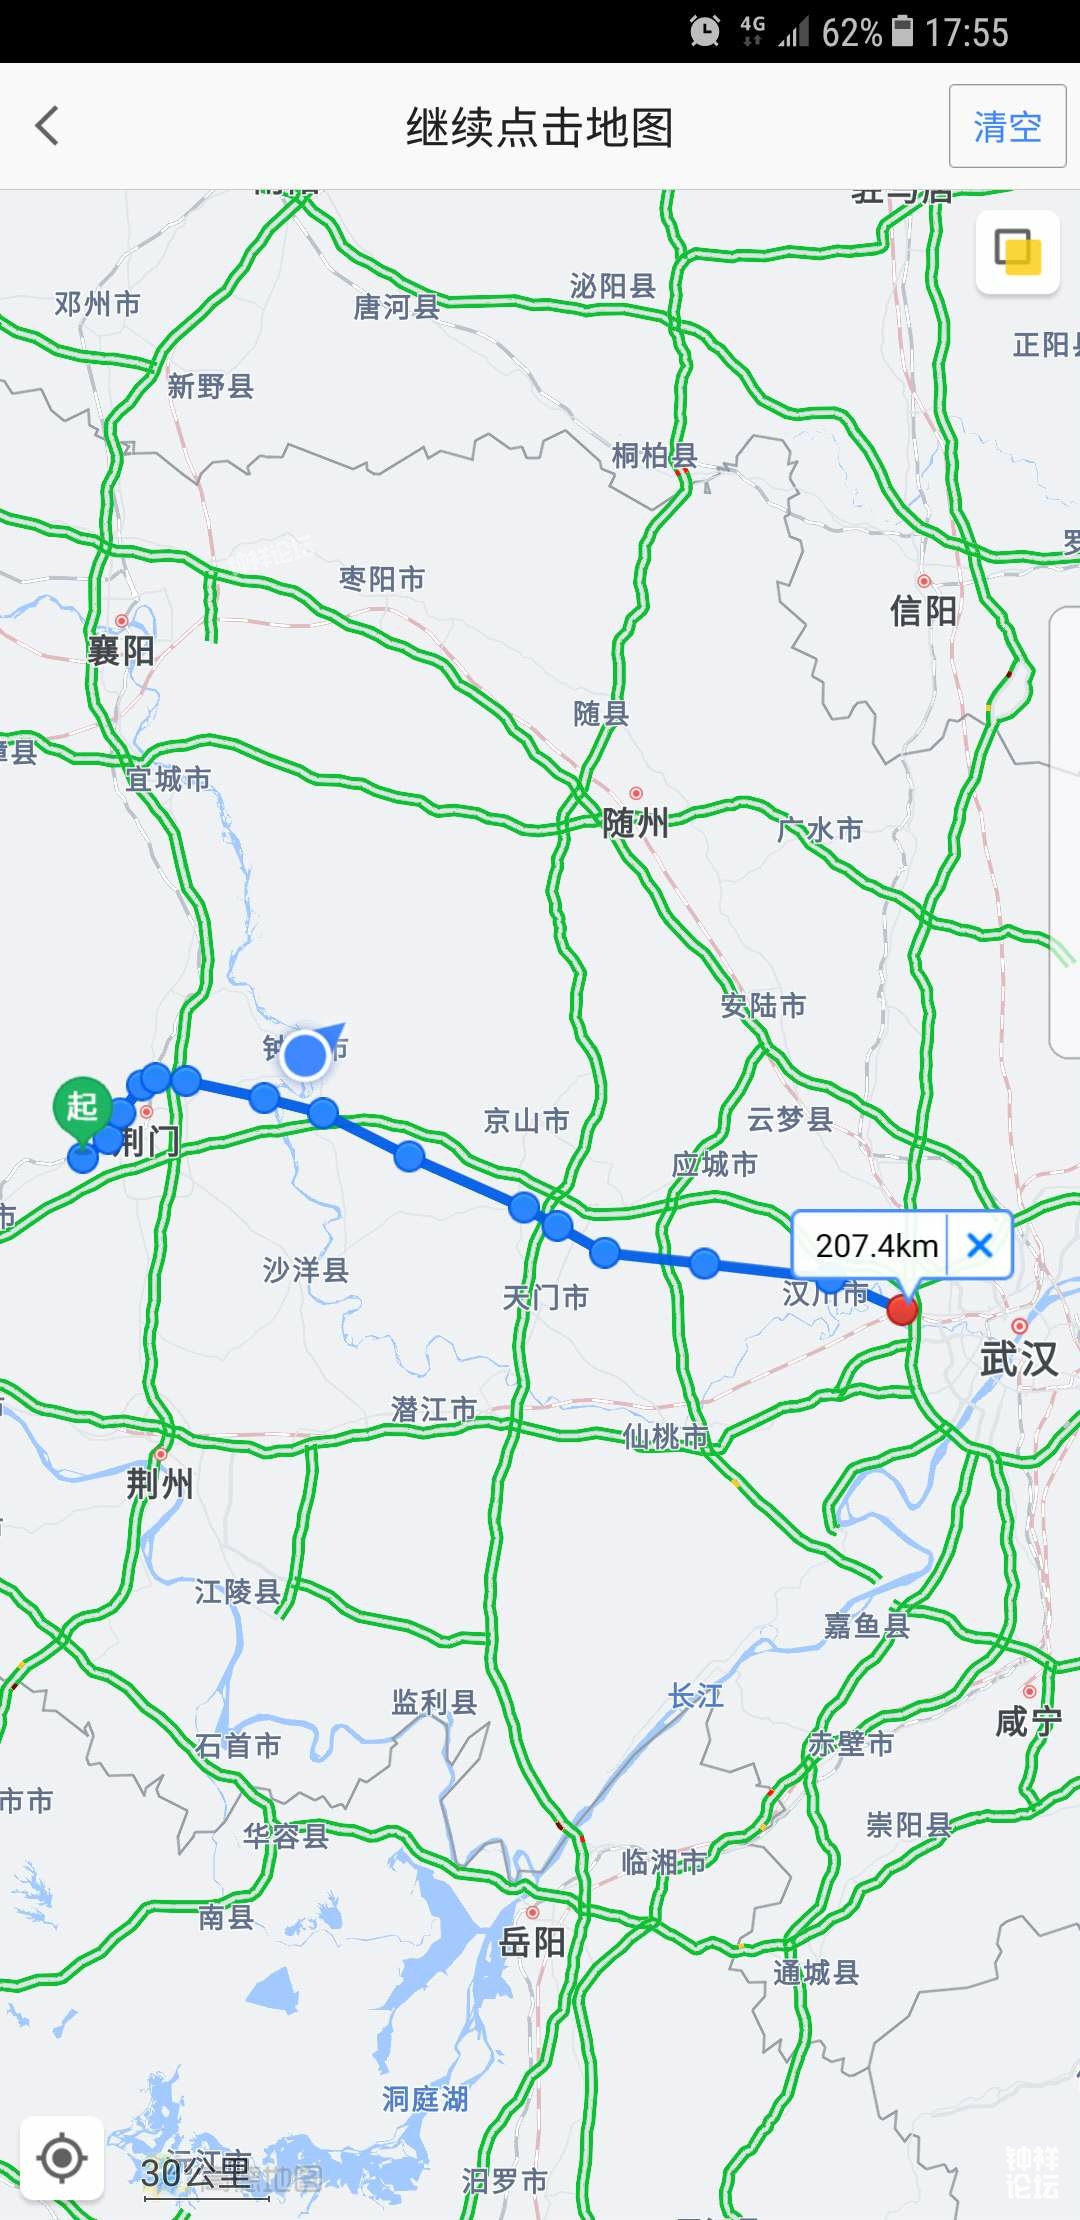 重磅!孝感市委:沿江高铁武荆段途径汉川,应城,正争取应城设站.